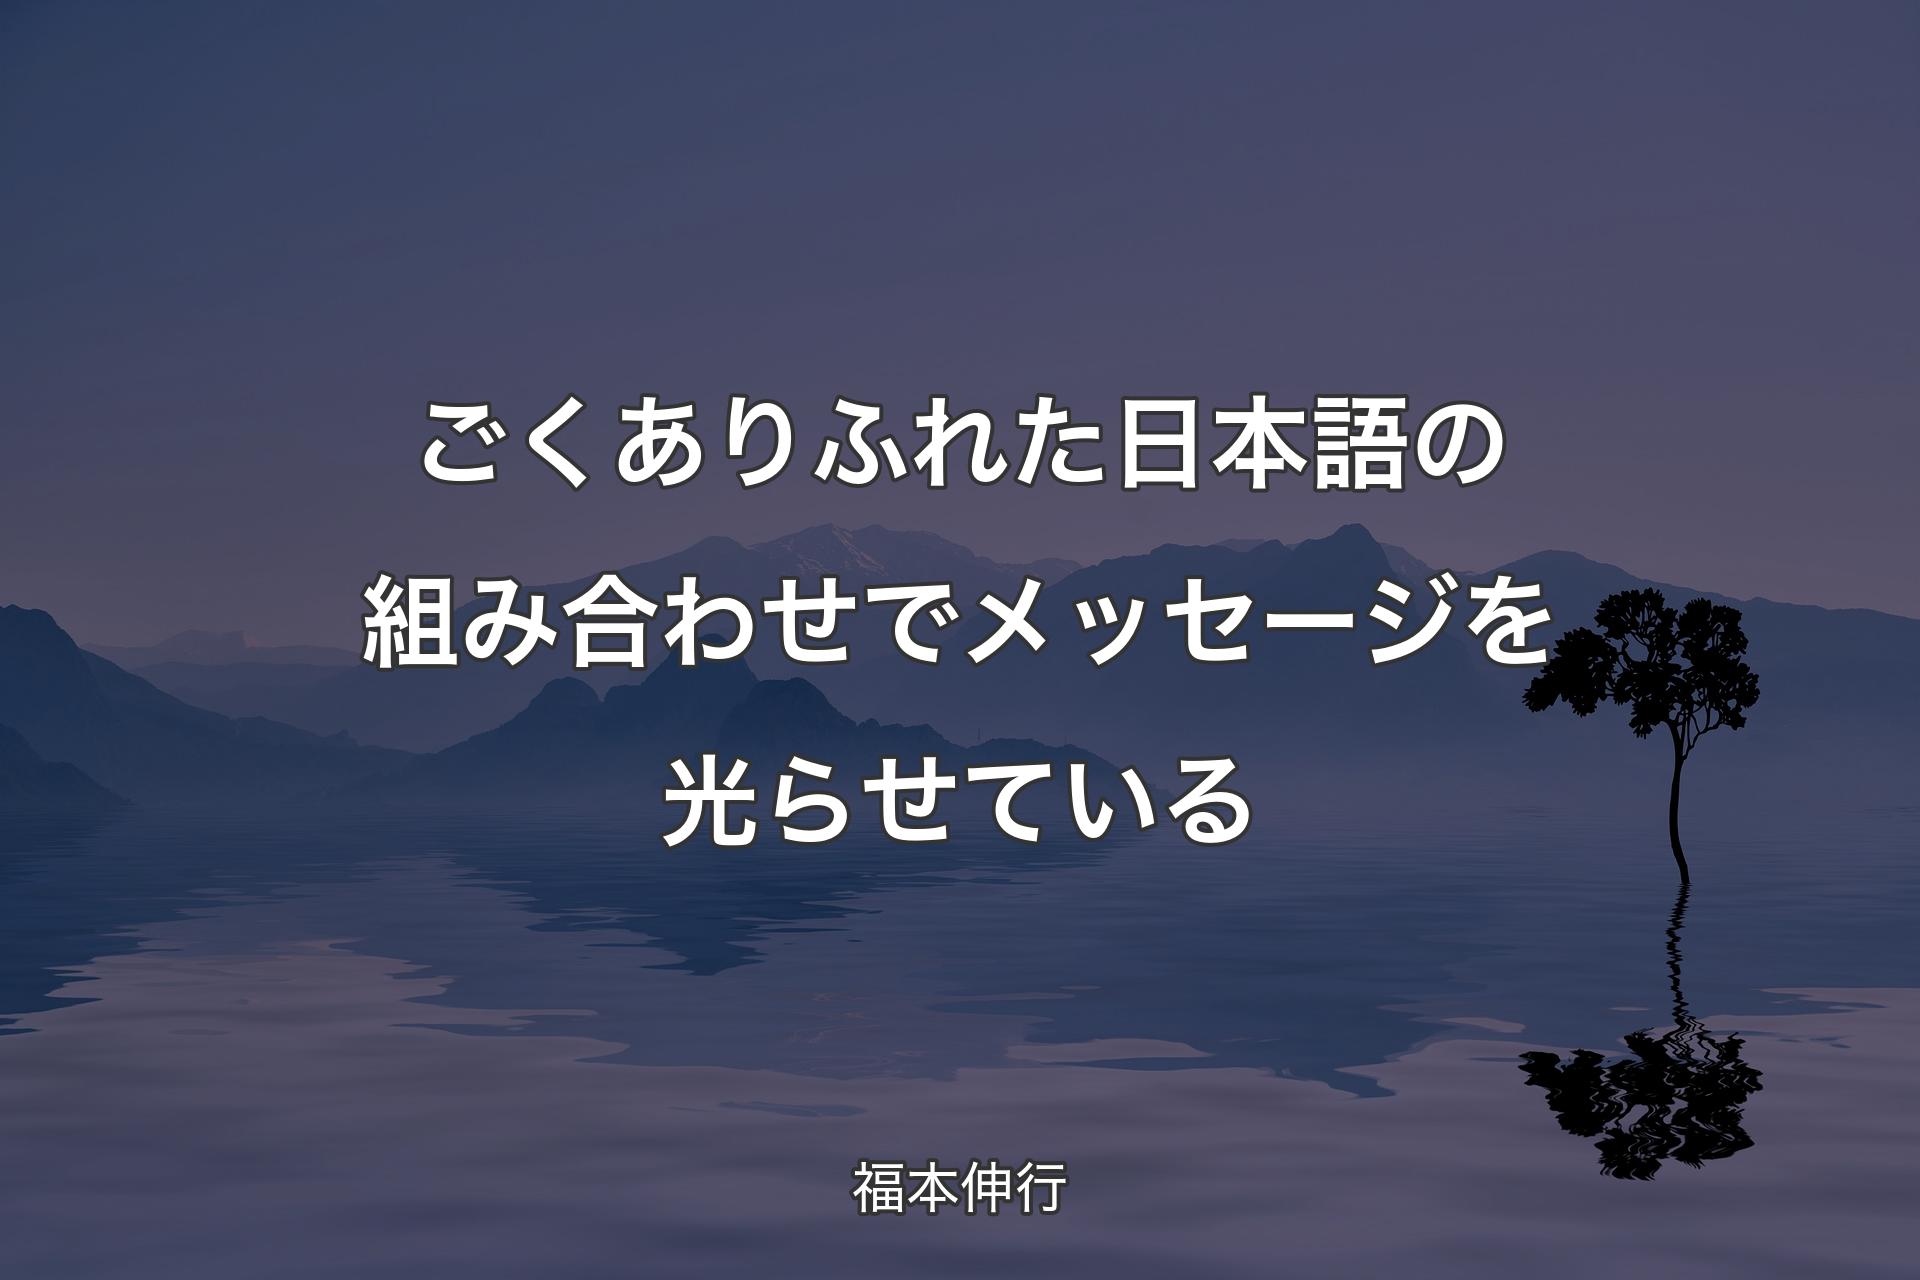 【背景4】ごくありふれた日本語の組み合わせでメッセージを光らせている - 福本伸行